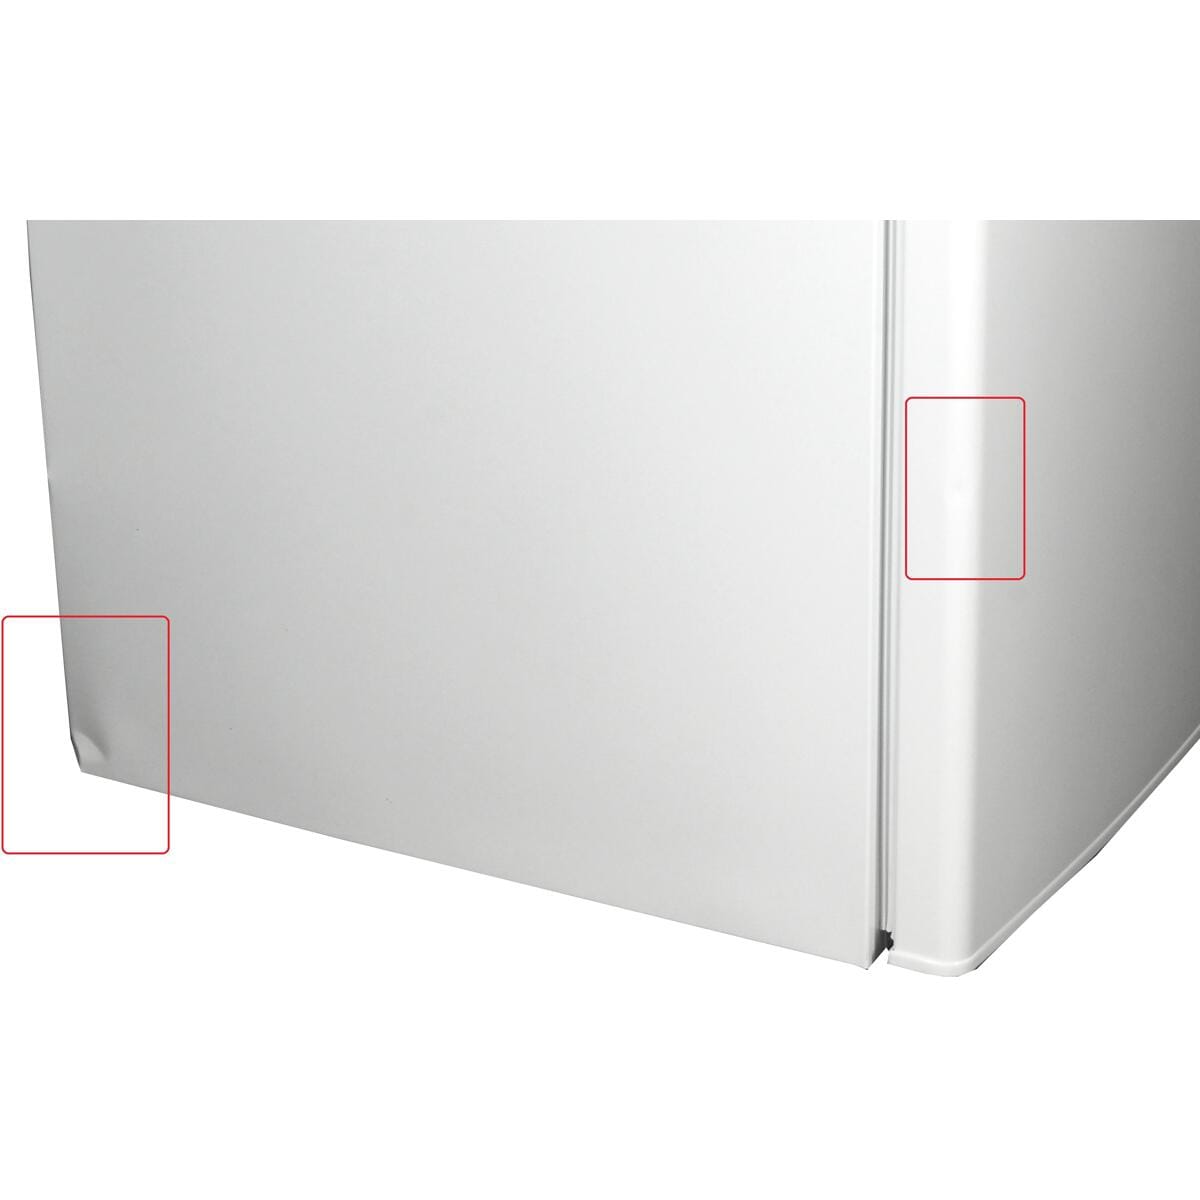 Gefrierfach 55cm mit LED-Beleuchtung weiß Stand-Kühlschrank KS16-4-E-040E Liter breit 109 Exquisit